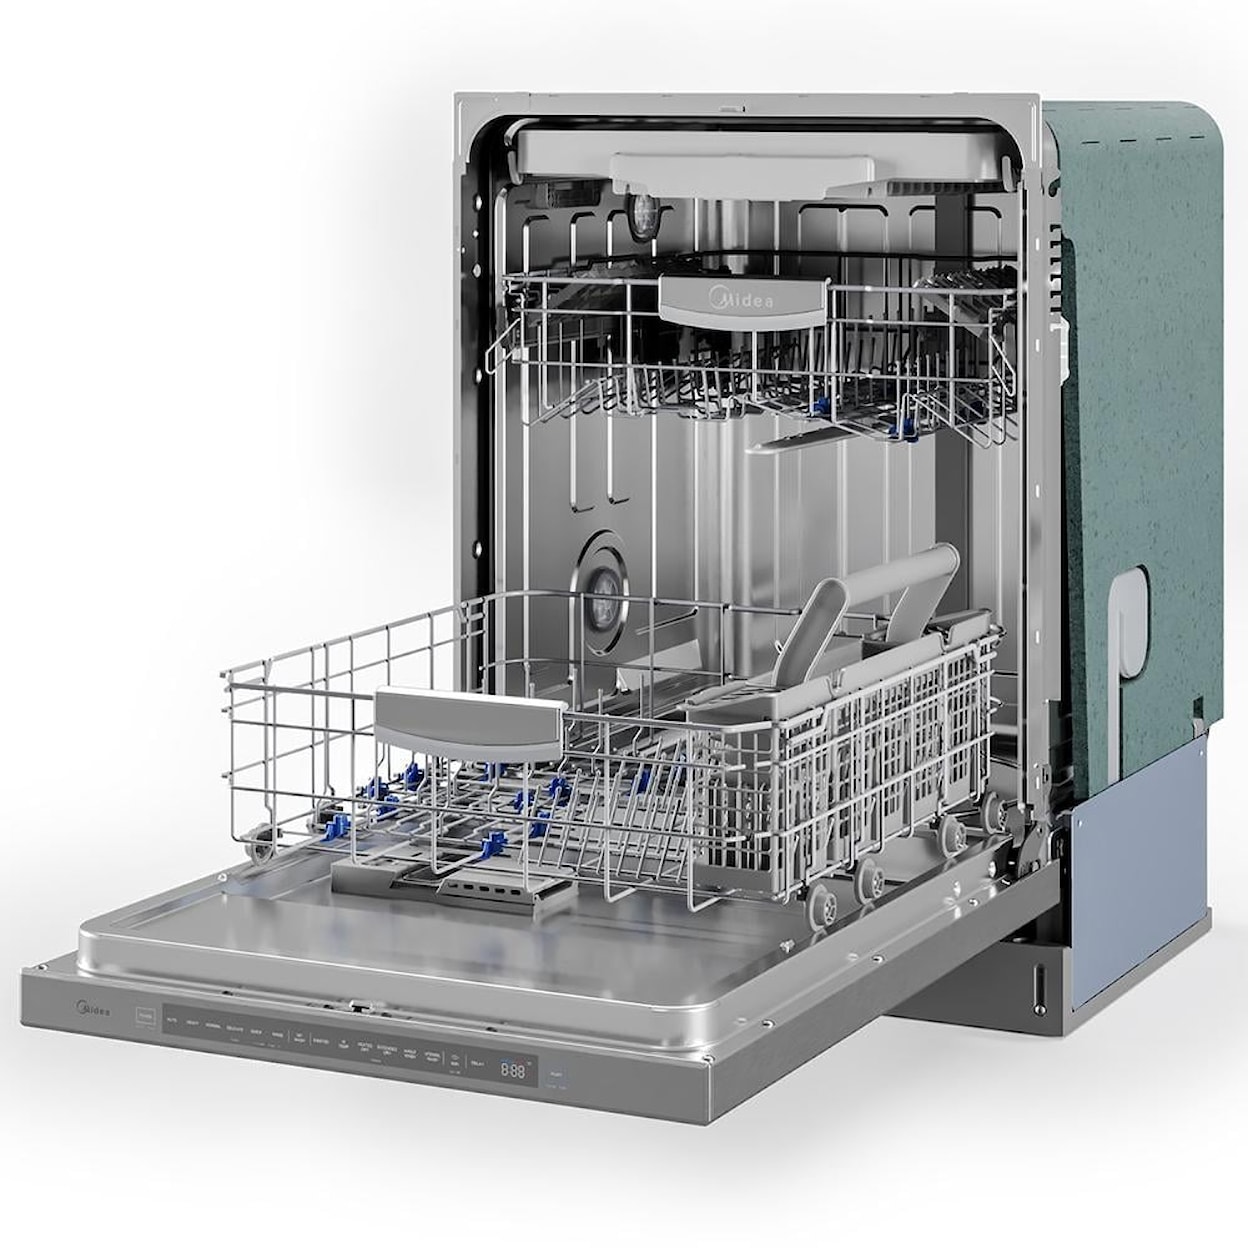 Midea Dishwashers Dishwasher